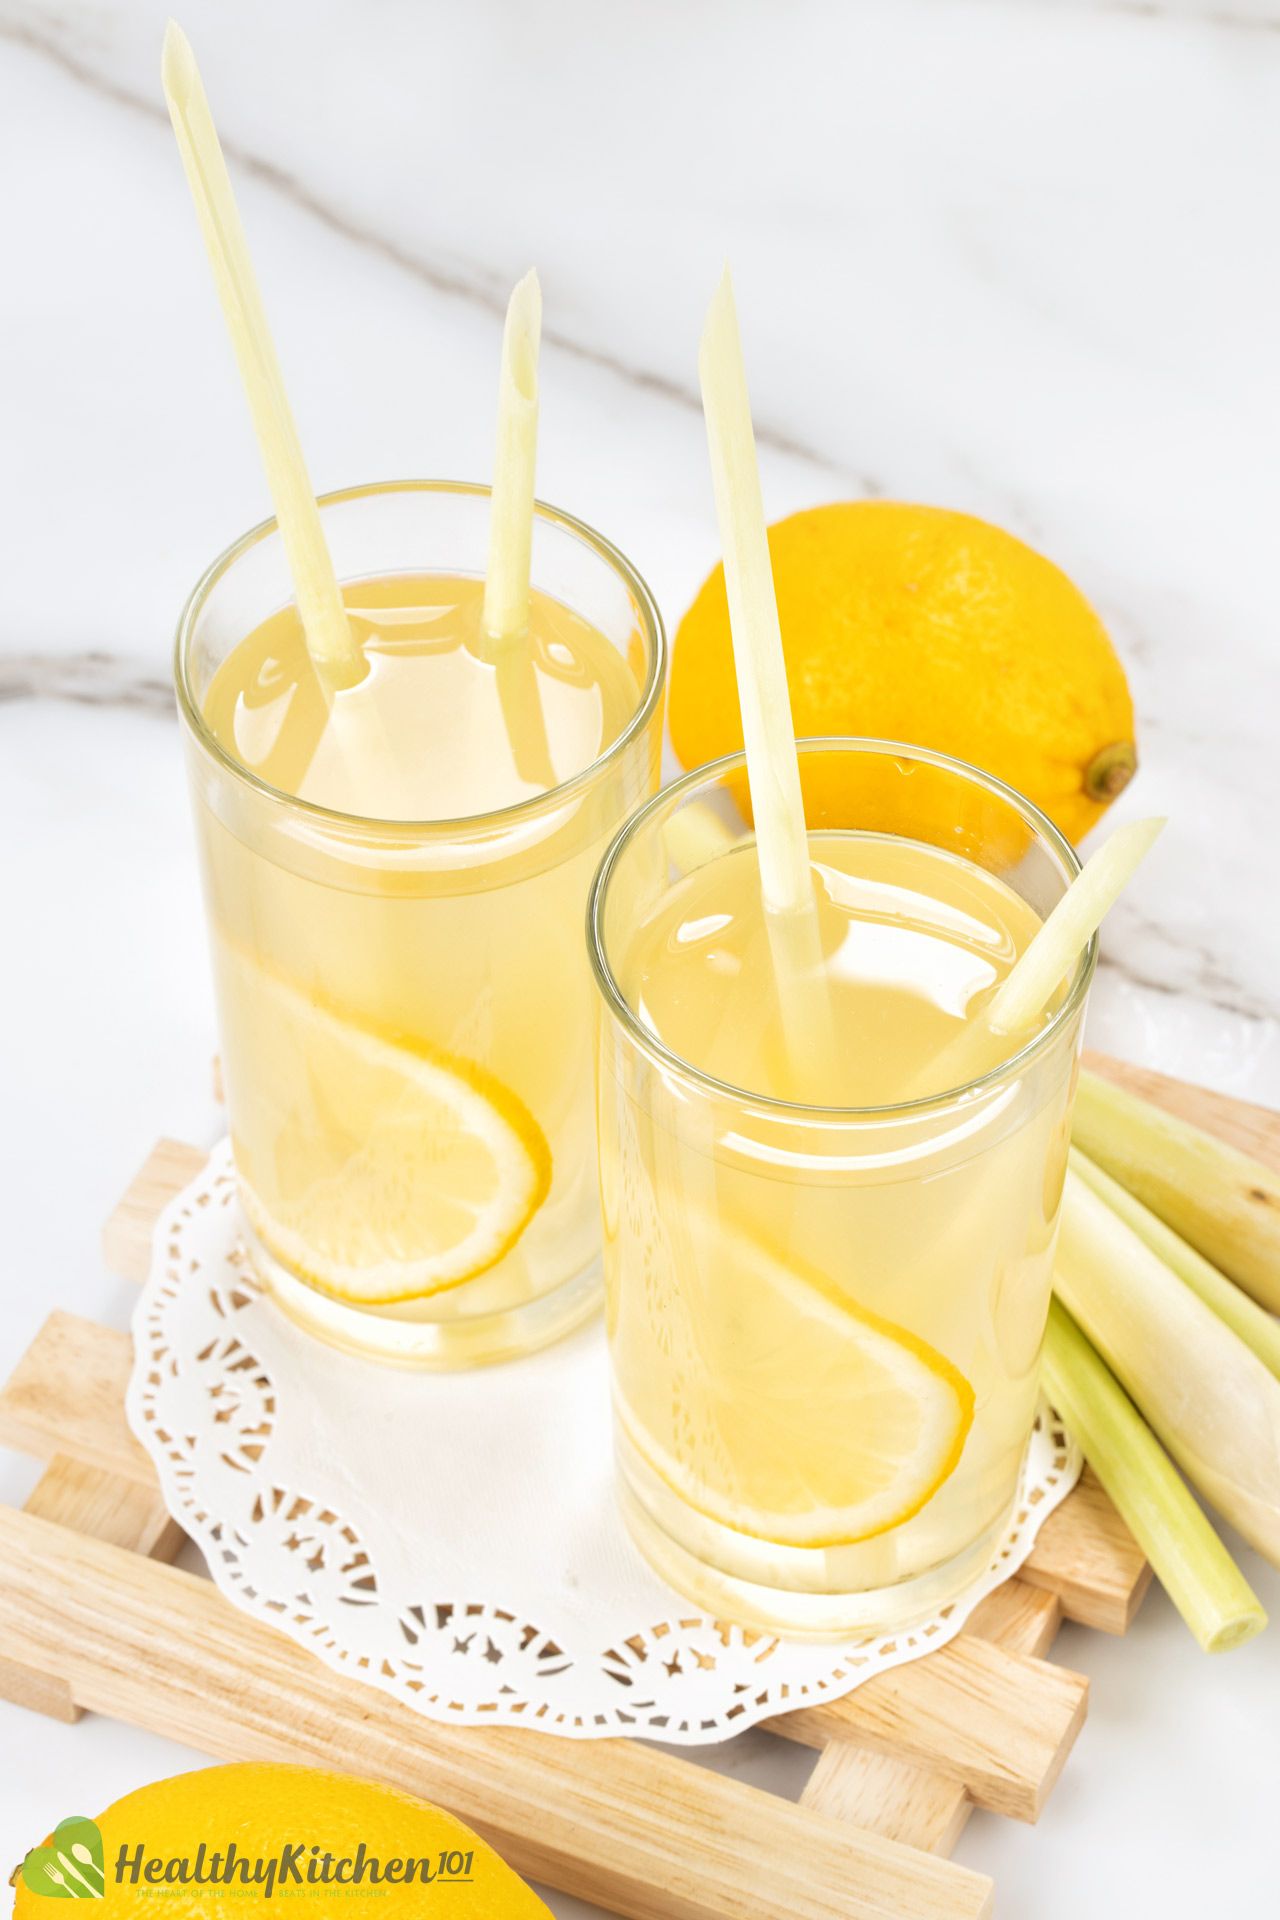 benefits of apple cider vinegar and lemon juice